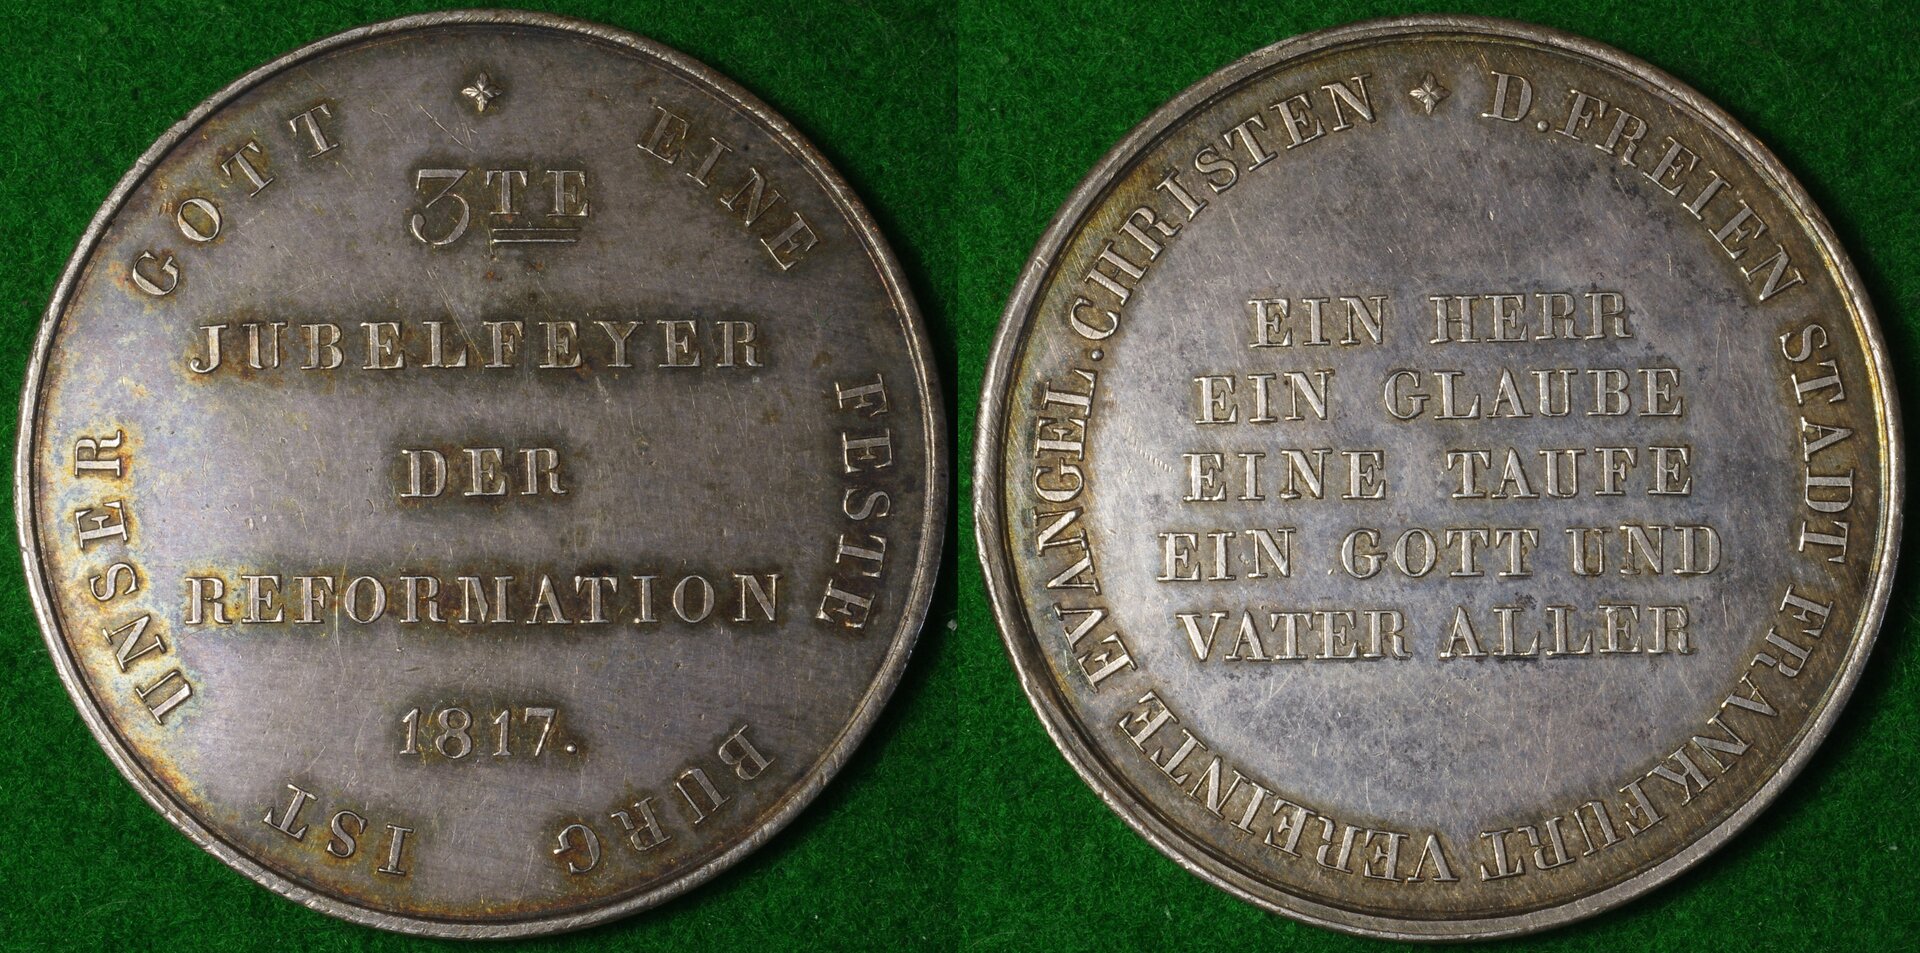 Frankfurt medal 1-horz.jpg